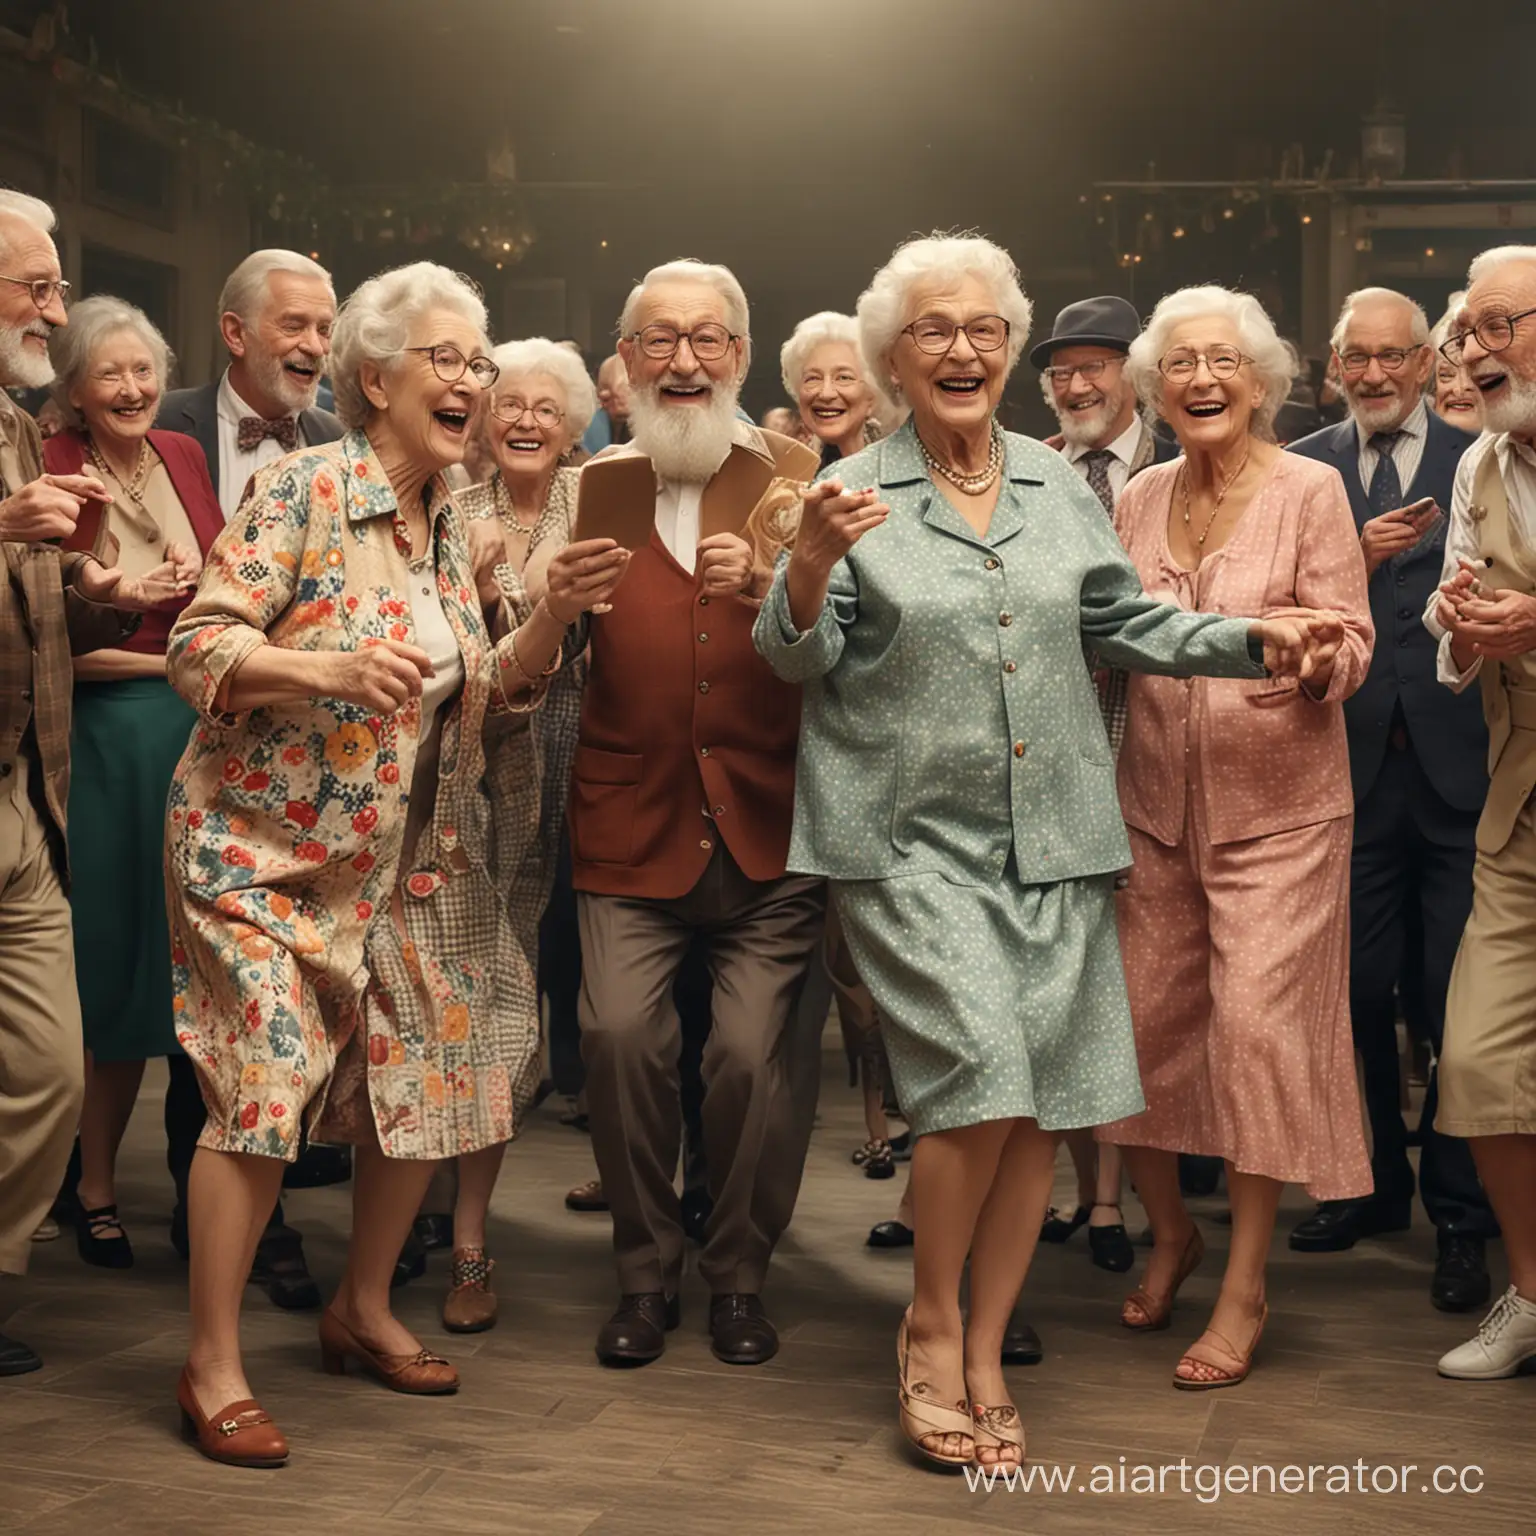 много стариков и старушек танцуют, читают, играют, смешные, веселые красивые разнообразные, эффектные, тусовка, вечеринка, модники, модно, фантазийно, мило, добро, Ultra HD, четкость, микродетализация текстур

